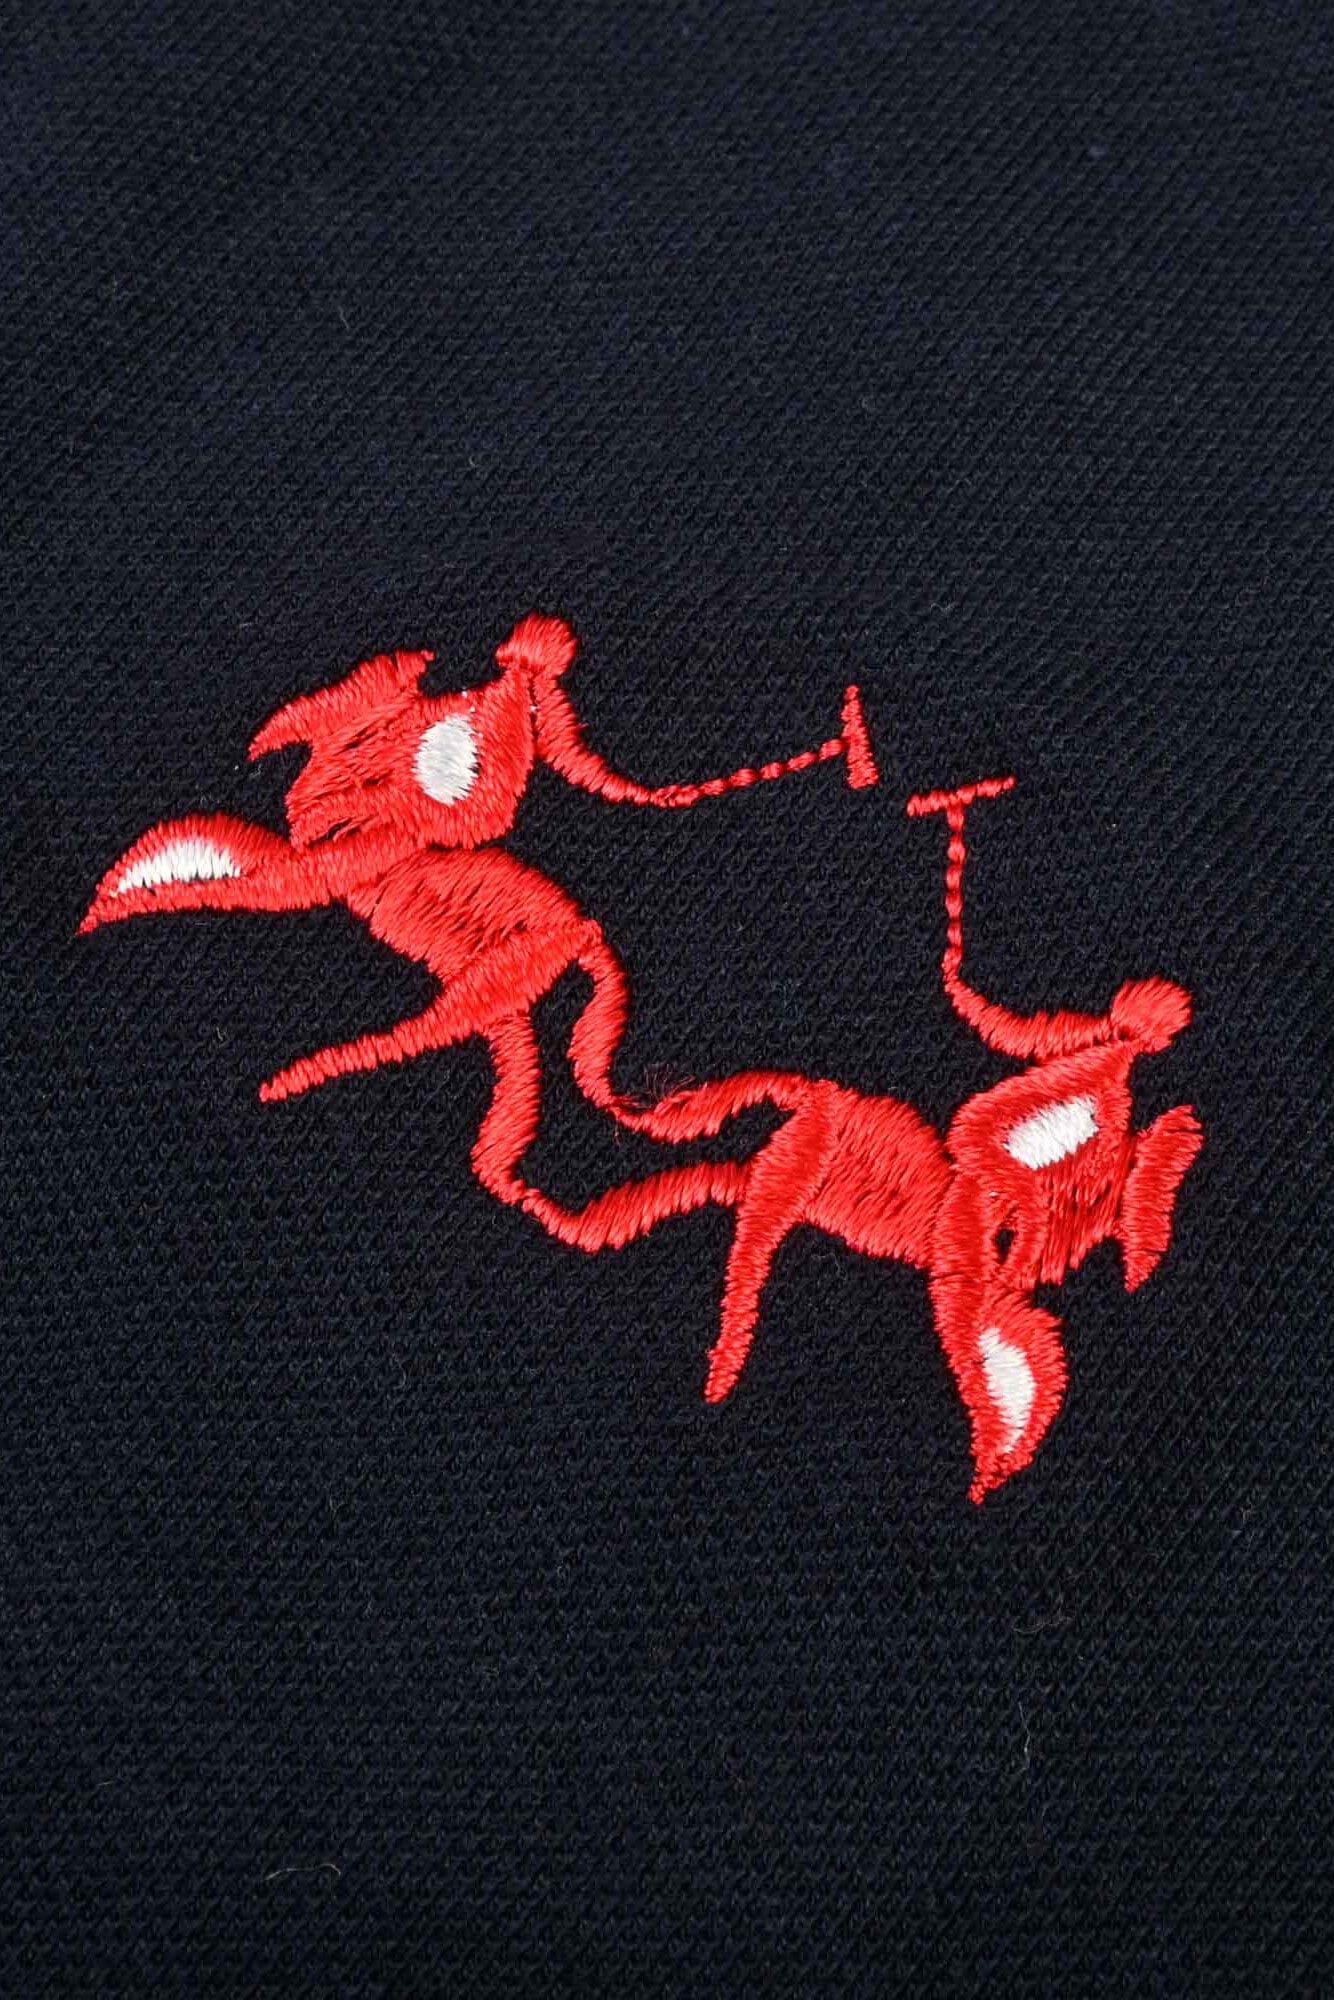 Polo Republica Men's Double Horse & Emblem Embroidered Short Sleeve Polo Shirt Men's Polo Shirt Polo Republica 